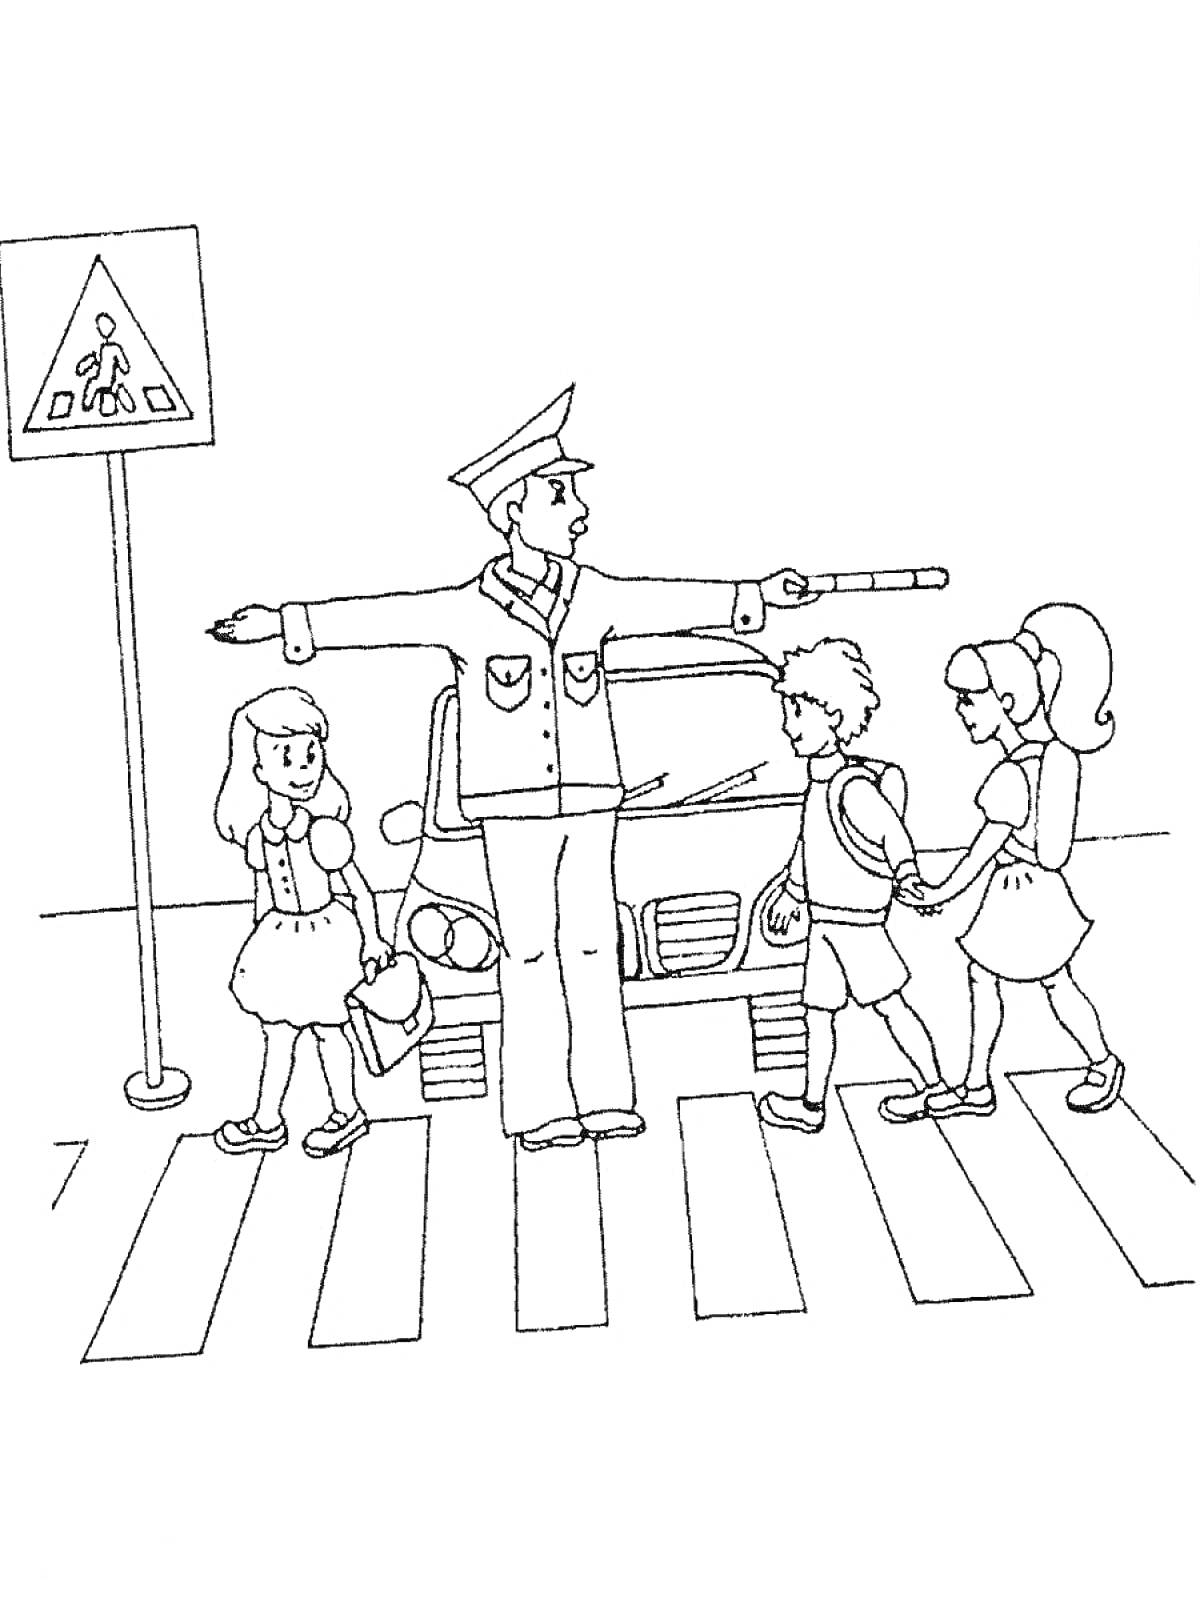 Раскраска Полицейский регулирует движение на пешеходном переходе, трое детей переходят дорогу, дорожный знак на столбе